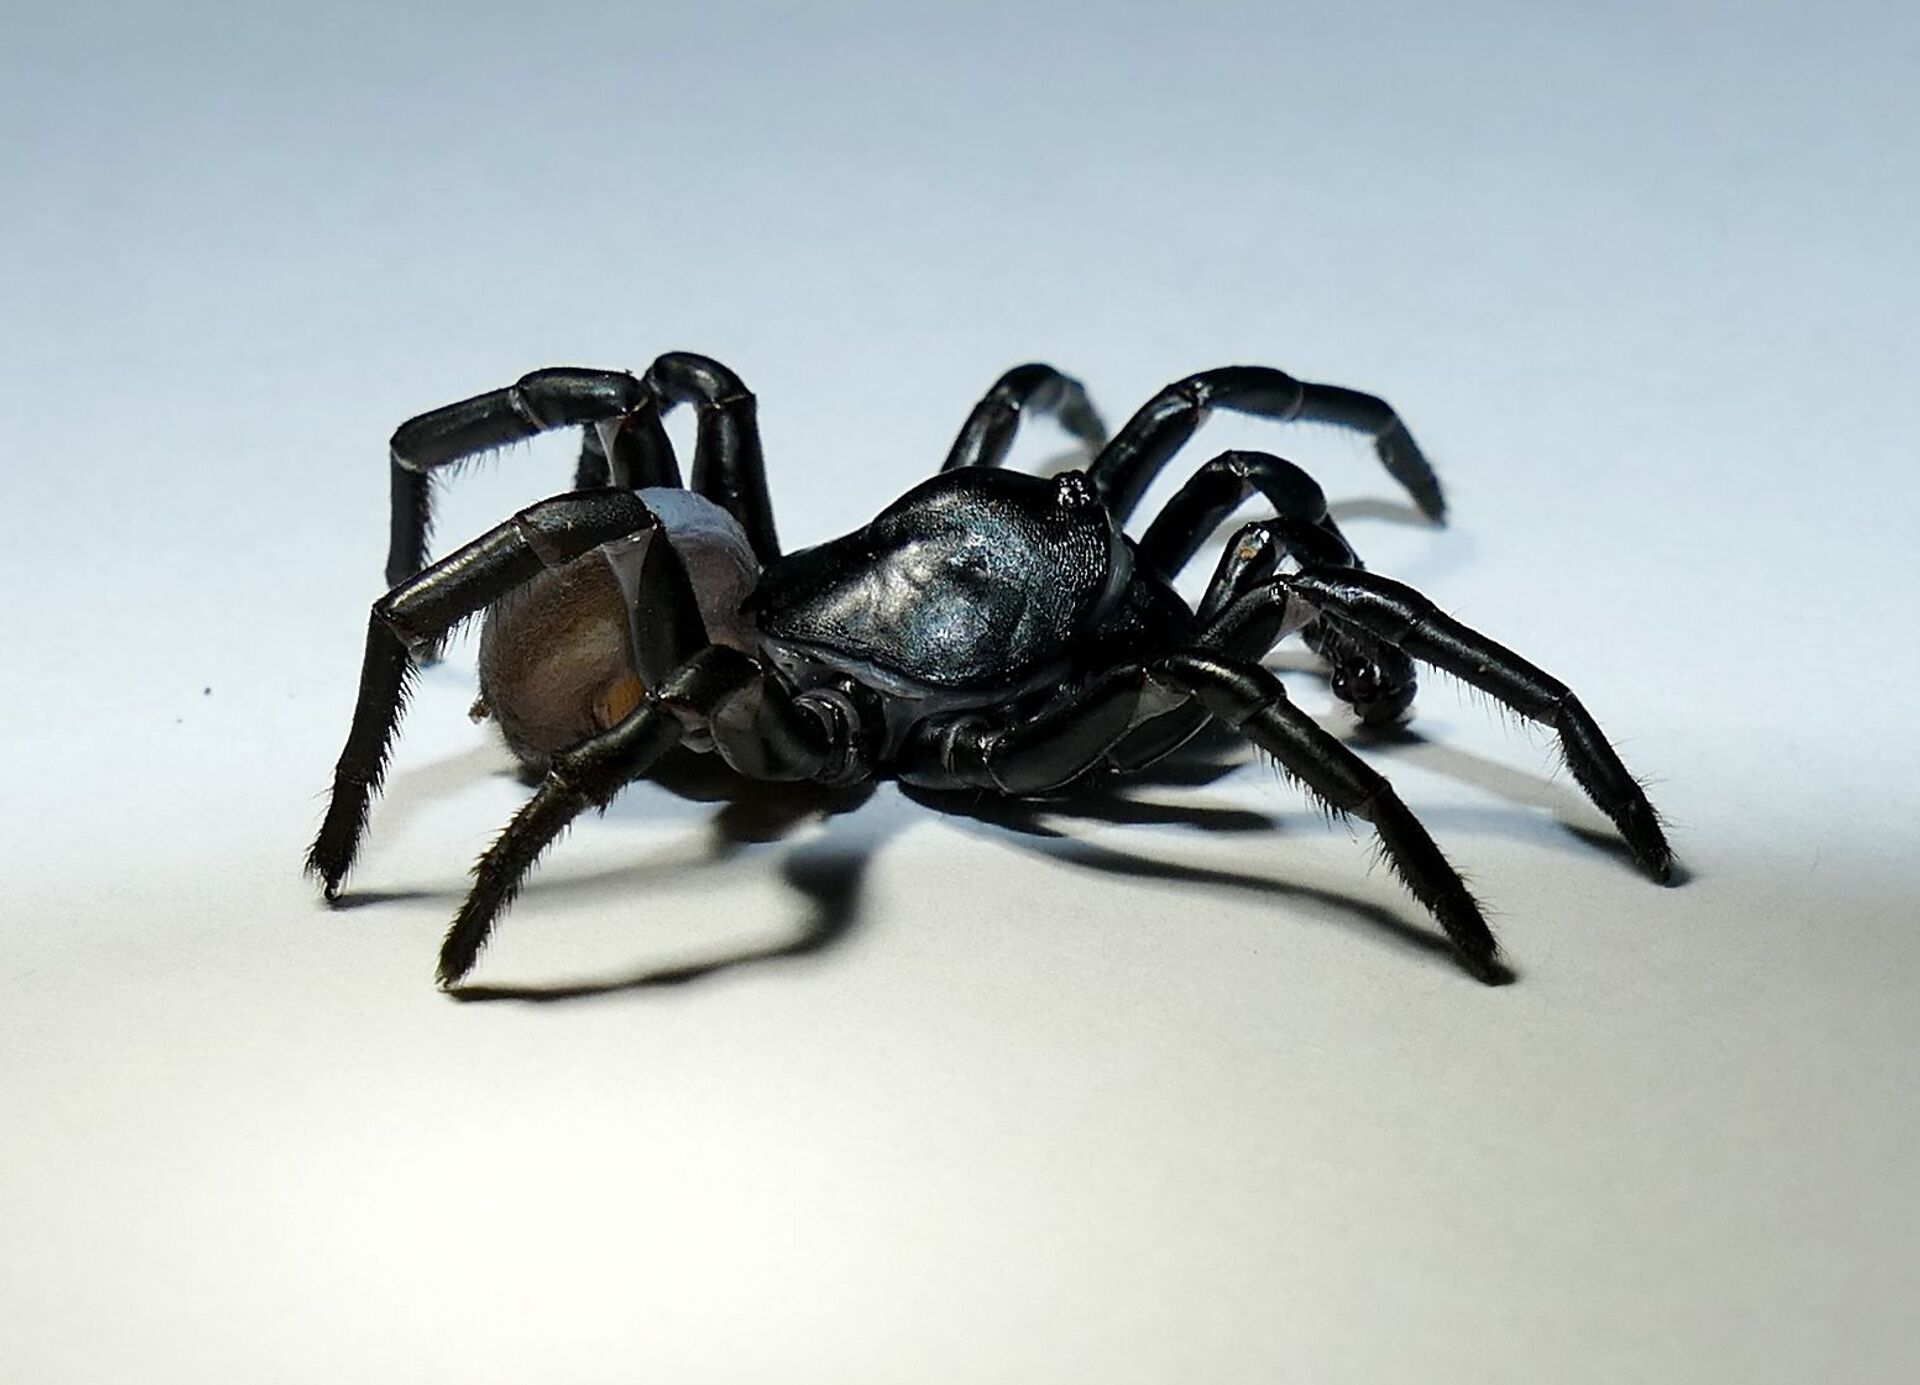 Nova espécie de aranha que pode viver por décadas é descoberta nos EUA (FOTO) - Sputnik Brasil, 1920, 22.04.2021